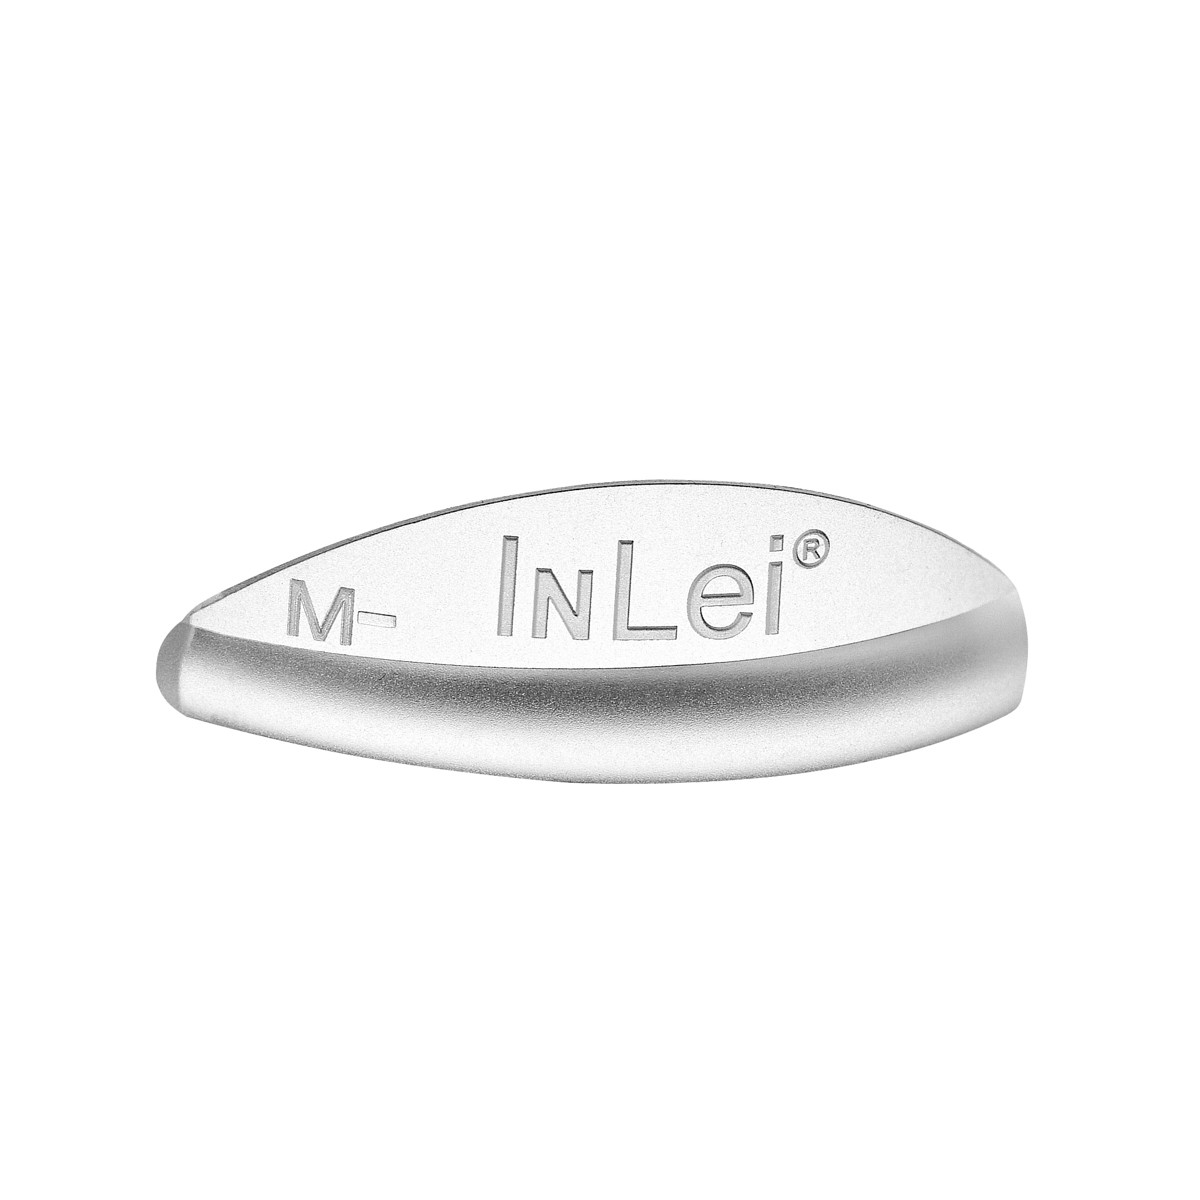 İnLei® “ONE” M Numara Kirpik Kıvırıcı Silikon Bigudi